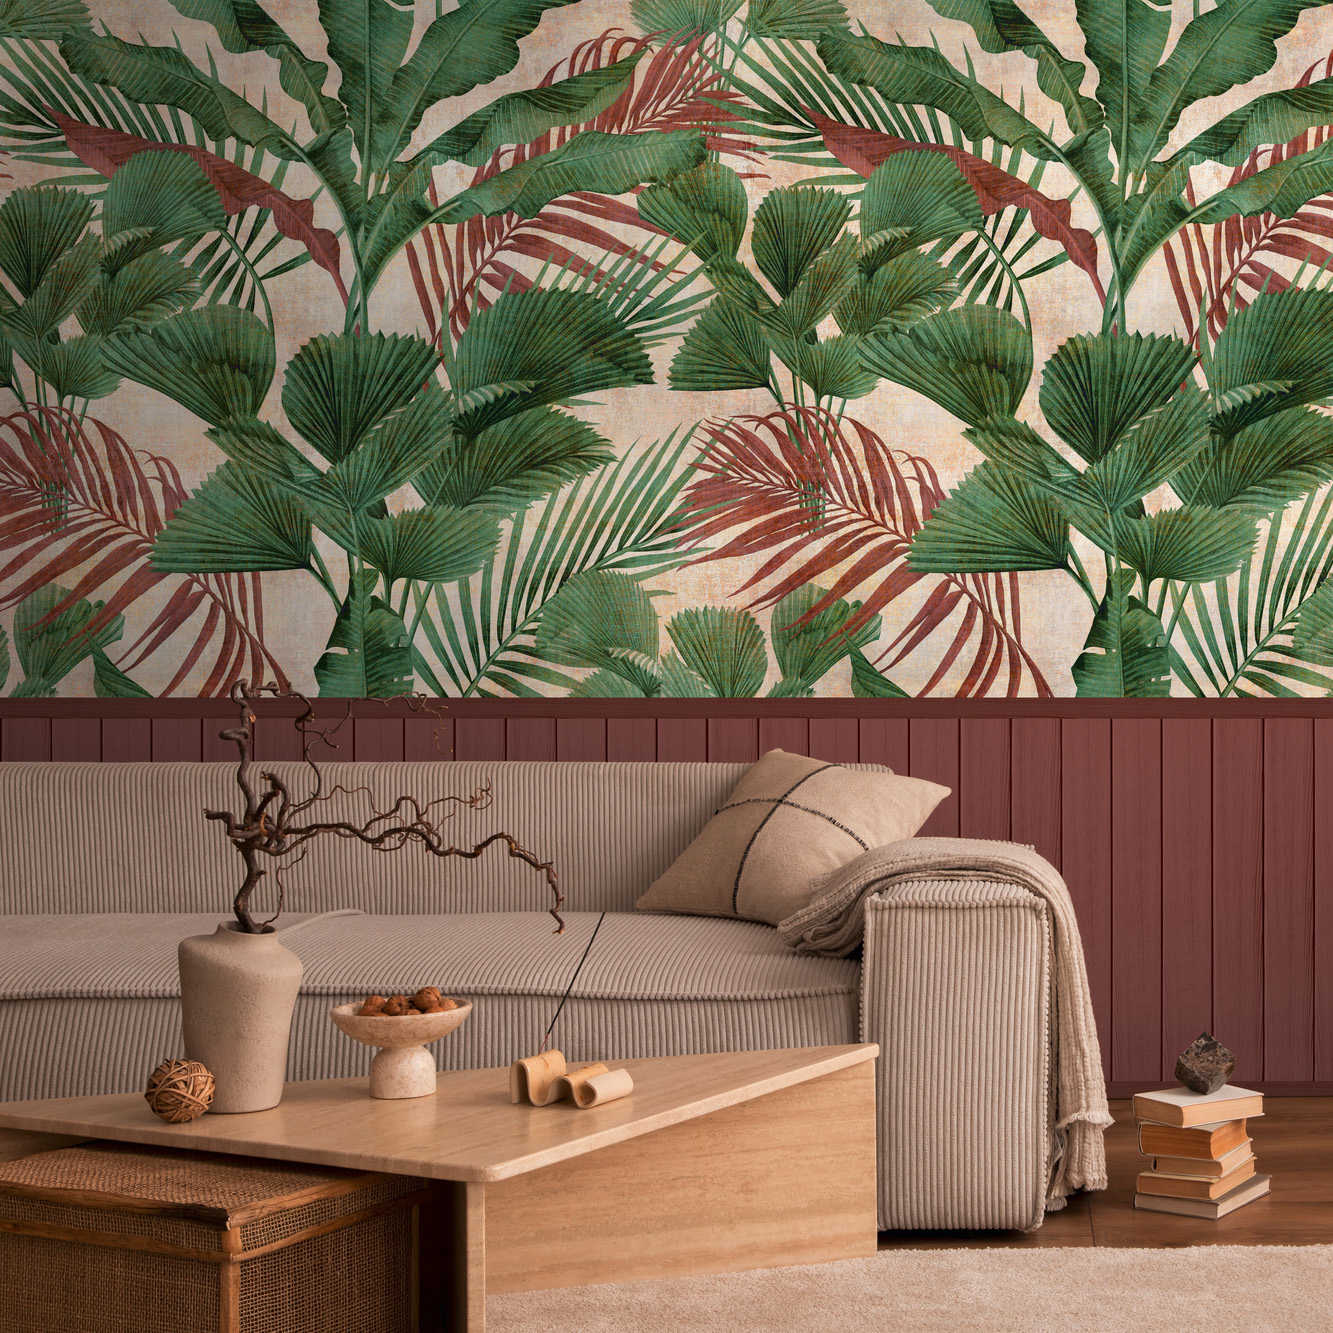 papier peint en papier intissé à motifs avec bordure de plinthe imitation bois et motif jungle - rouge, vert, beige
